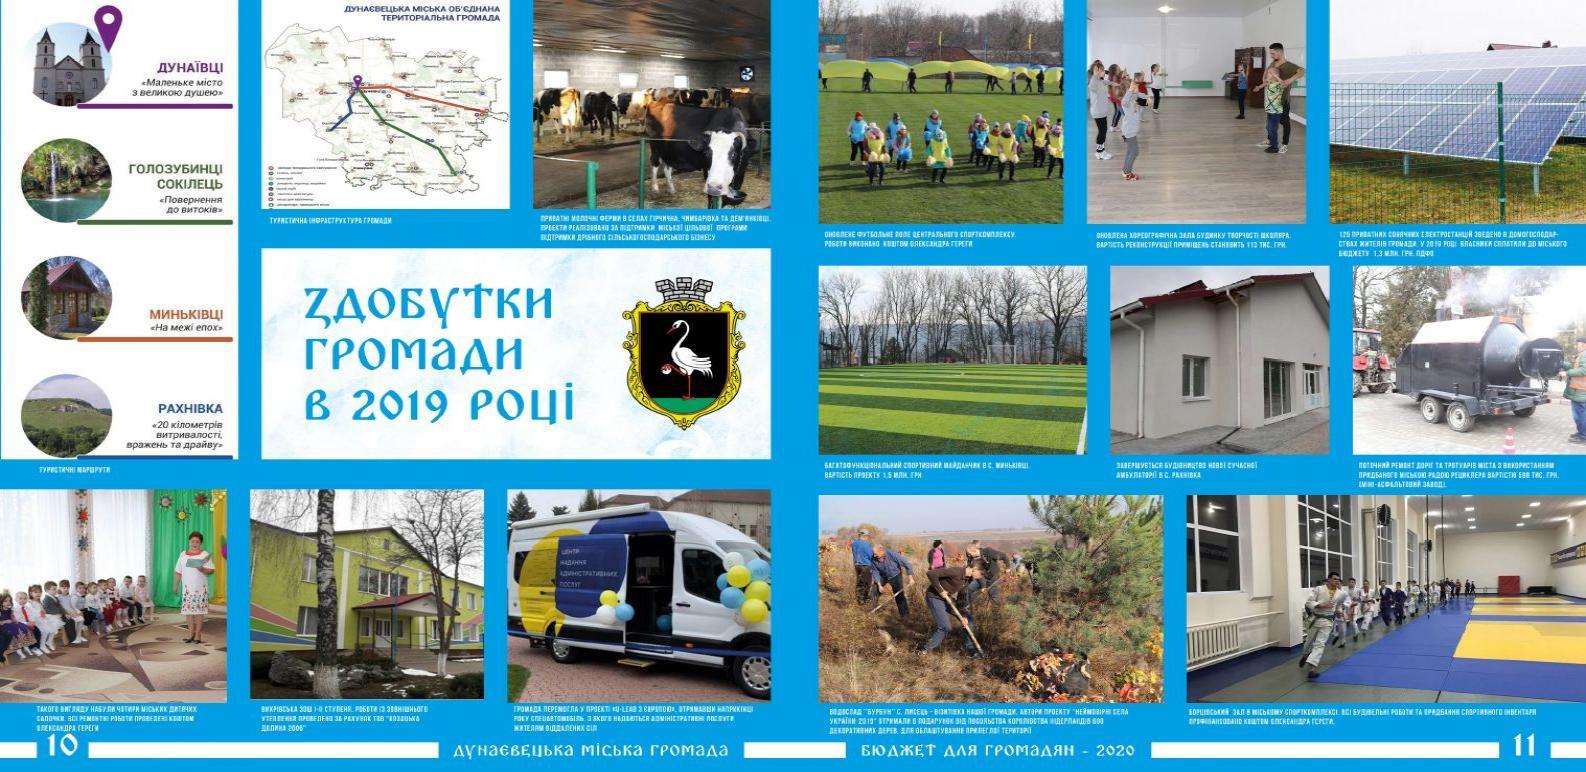 http://dunrada.gov.ua/uploadfile/archive_article/2020/09/04/2020-09-04_8469/images/images-319.jpg